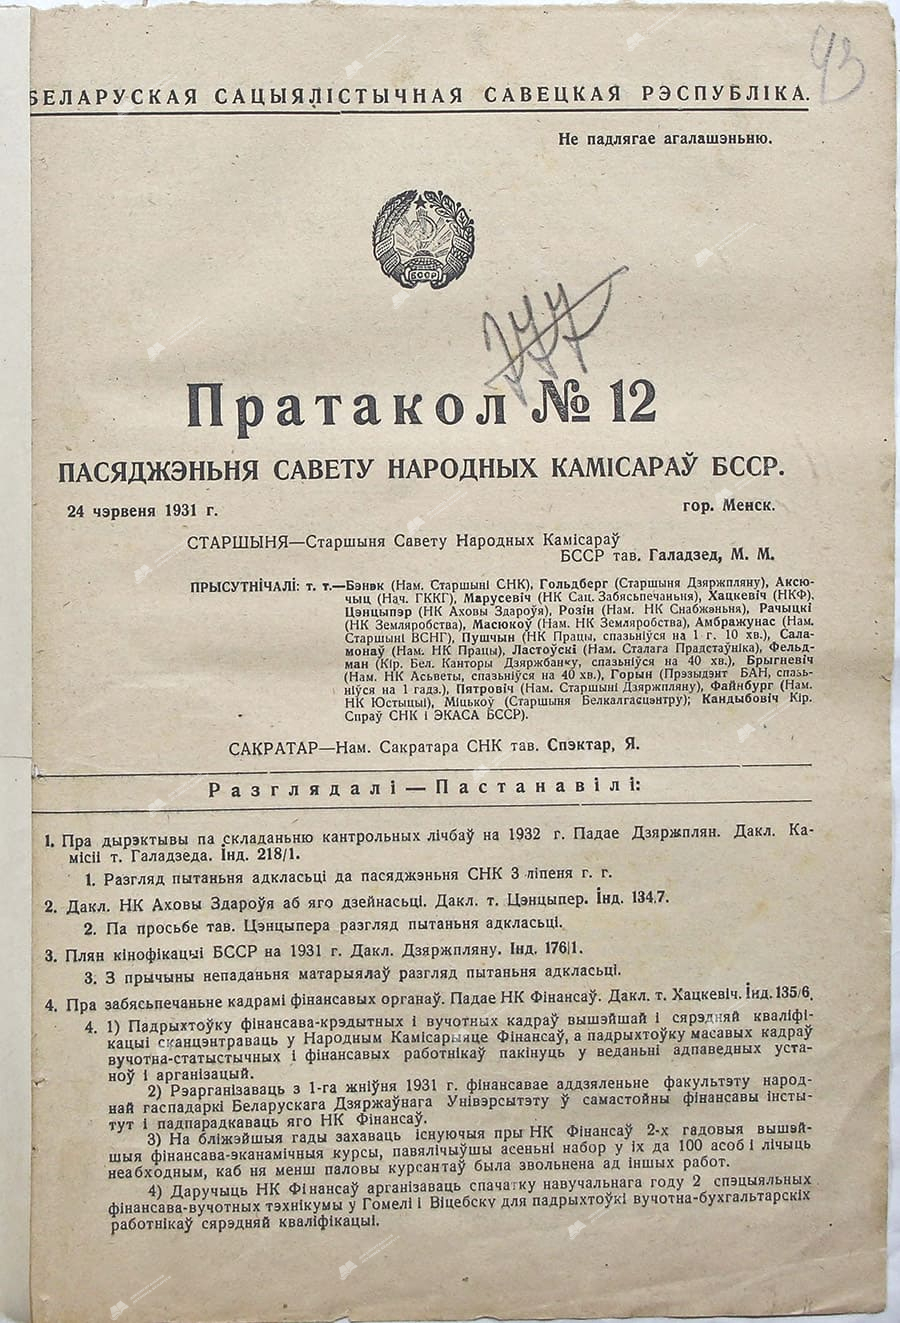 Протокол №12 заседания Совета Народных Комиссаров Белорусской ССР-с. 0